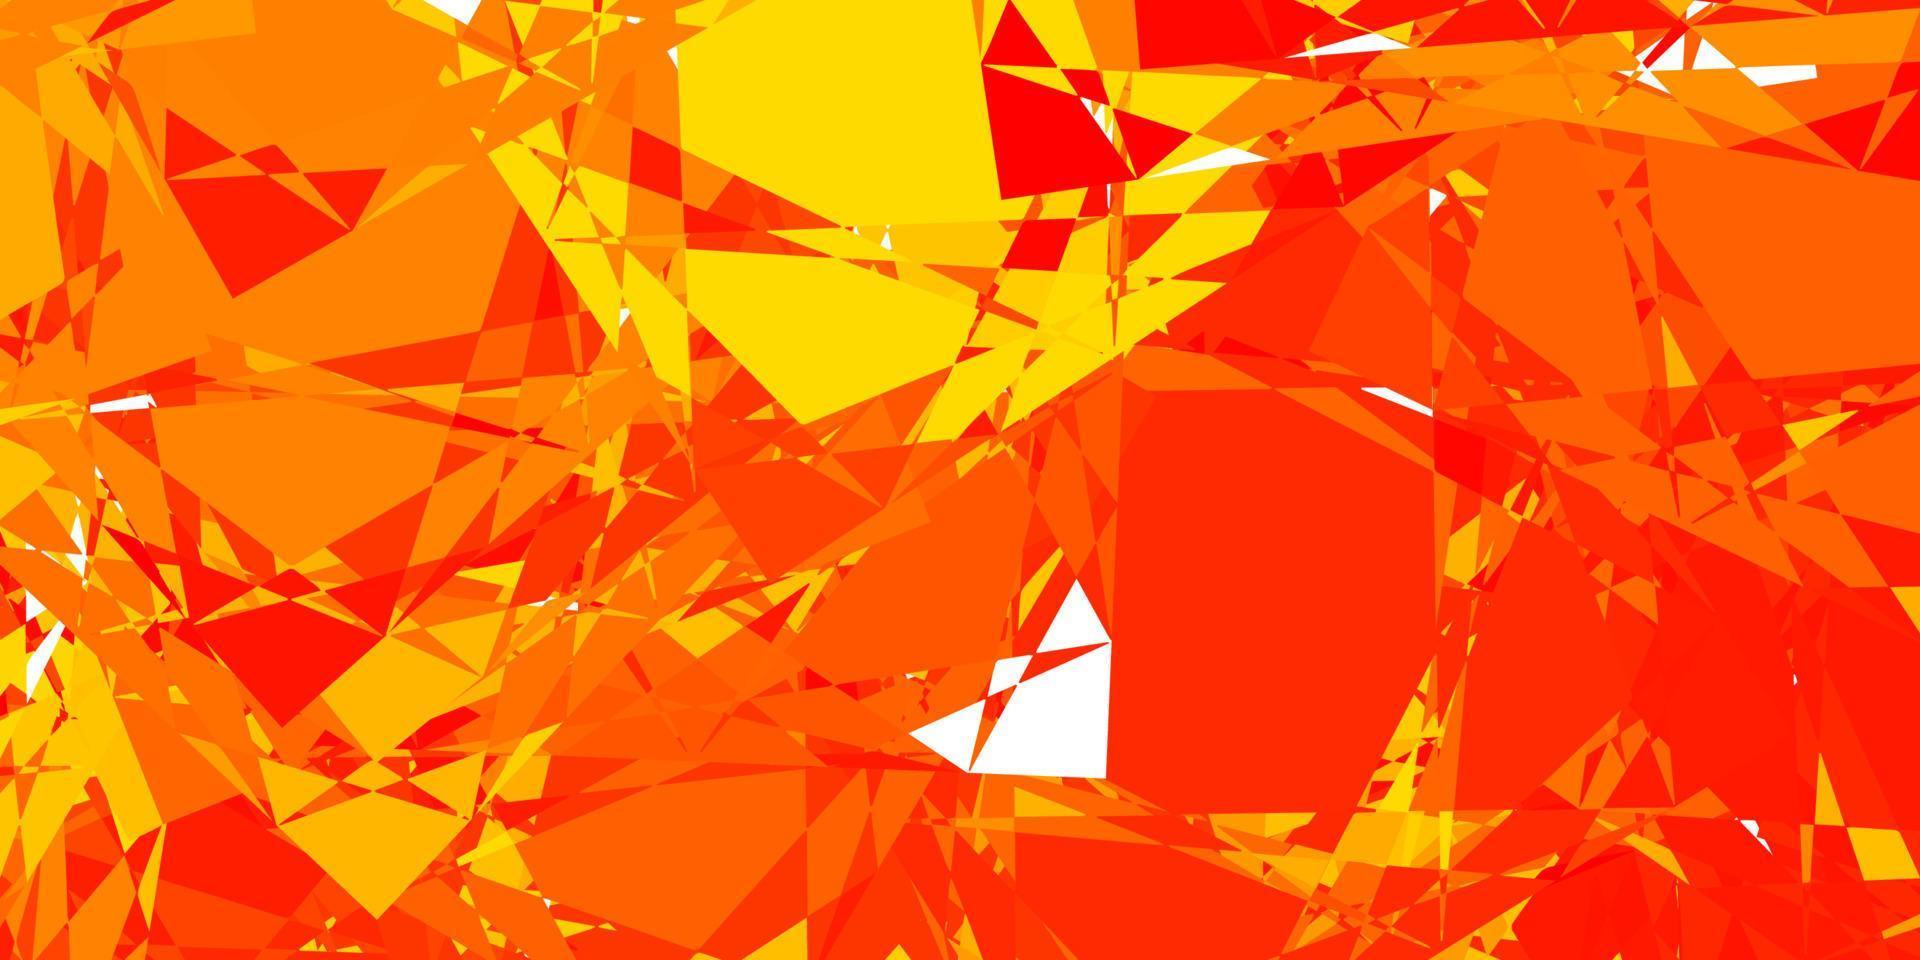 toile de fond de vecteur orange clair avec des triangles, des lignes.